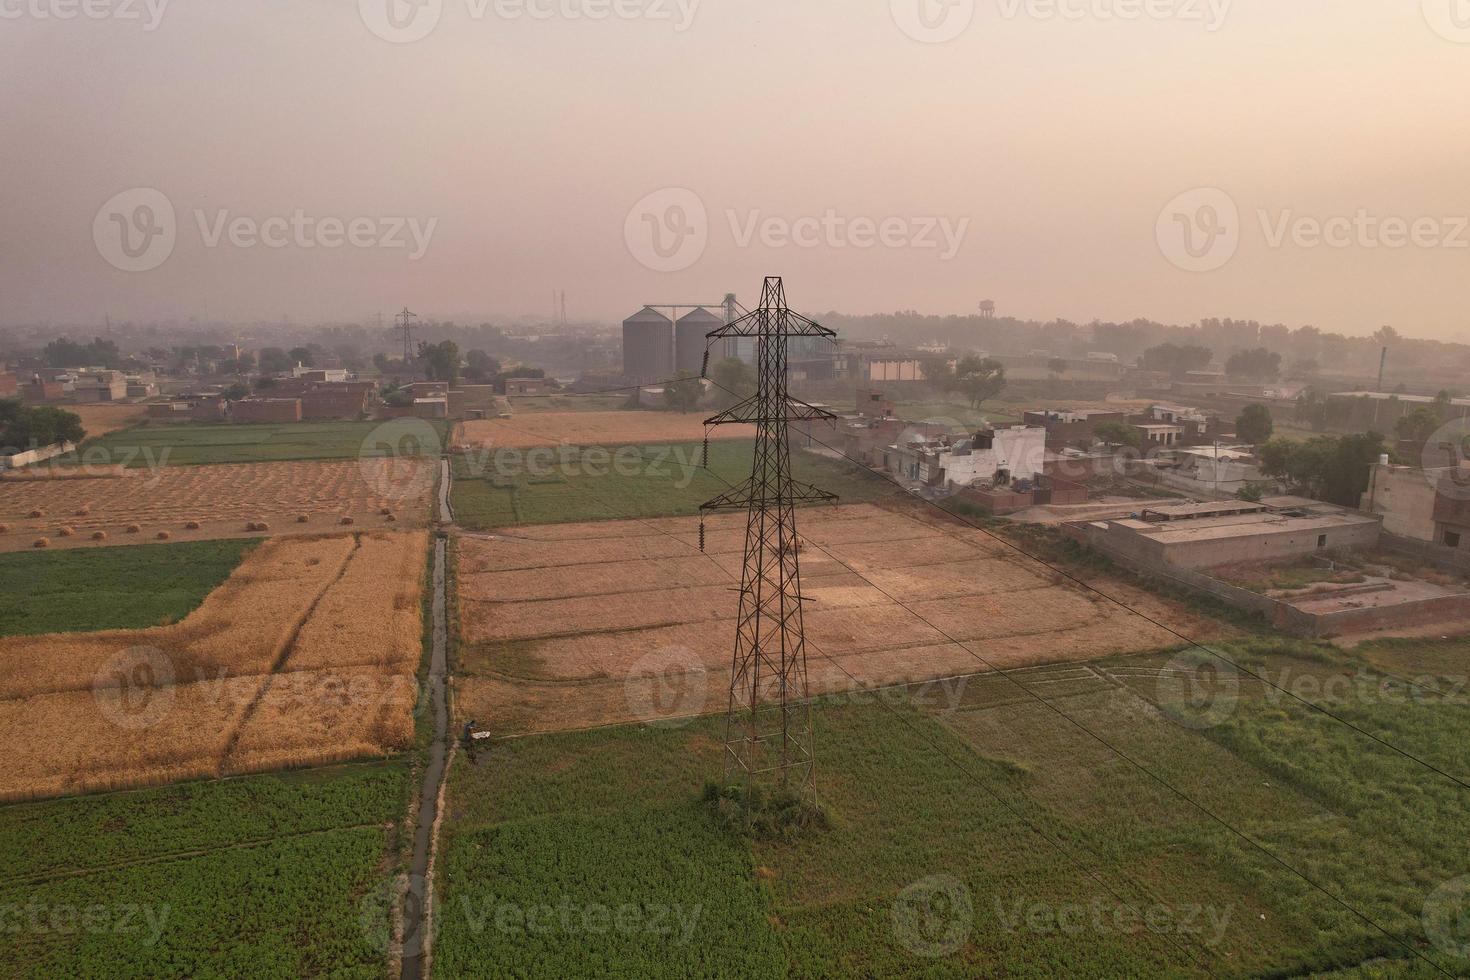 vista aérea da vila de kala shah kaku de punjab paquistão foto